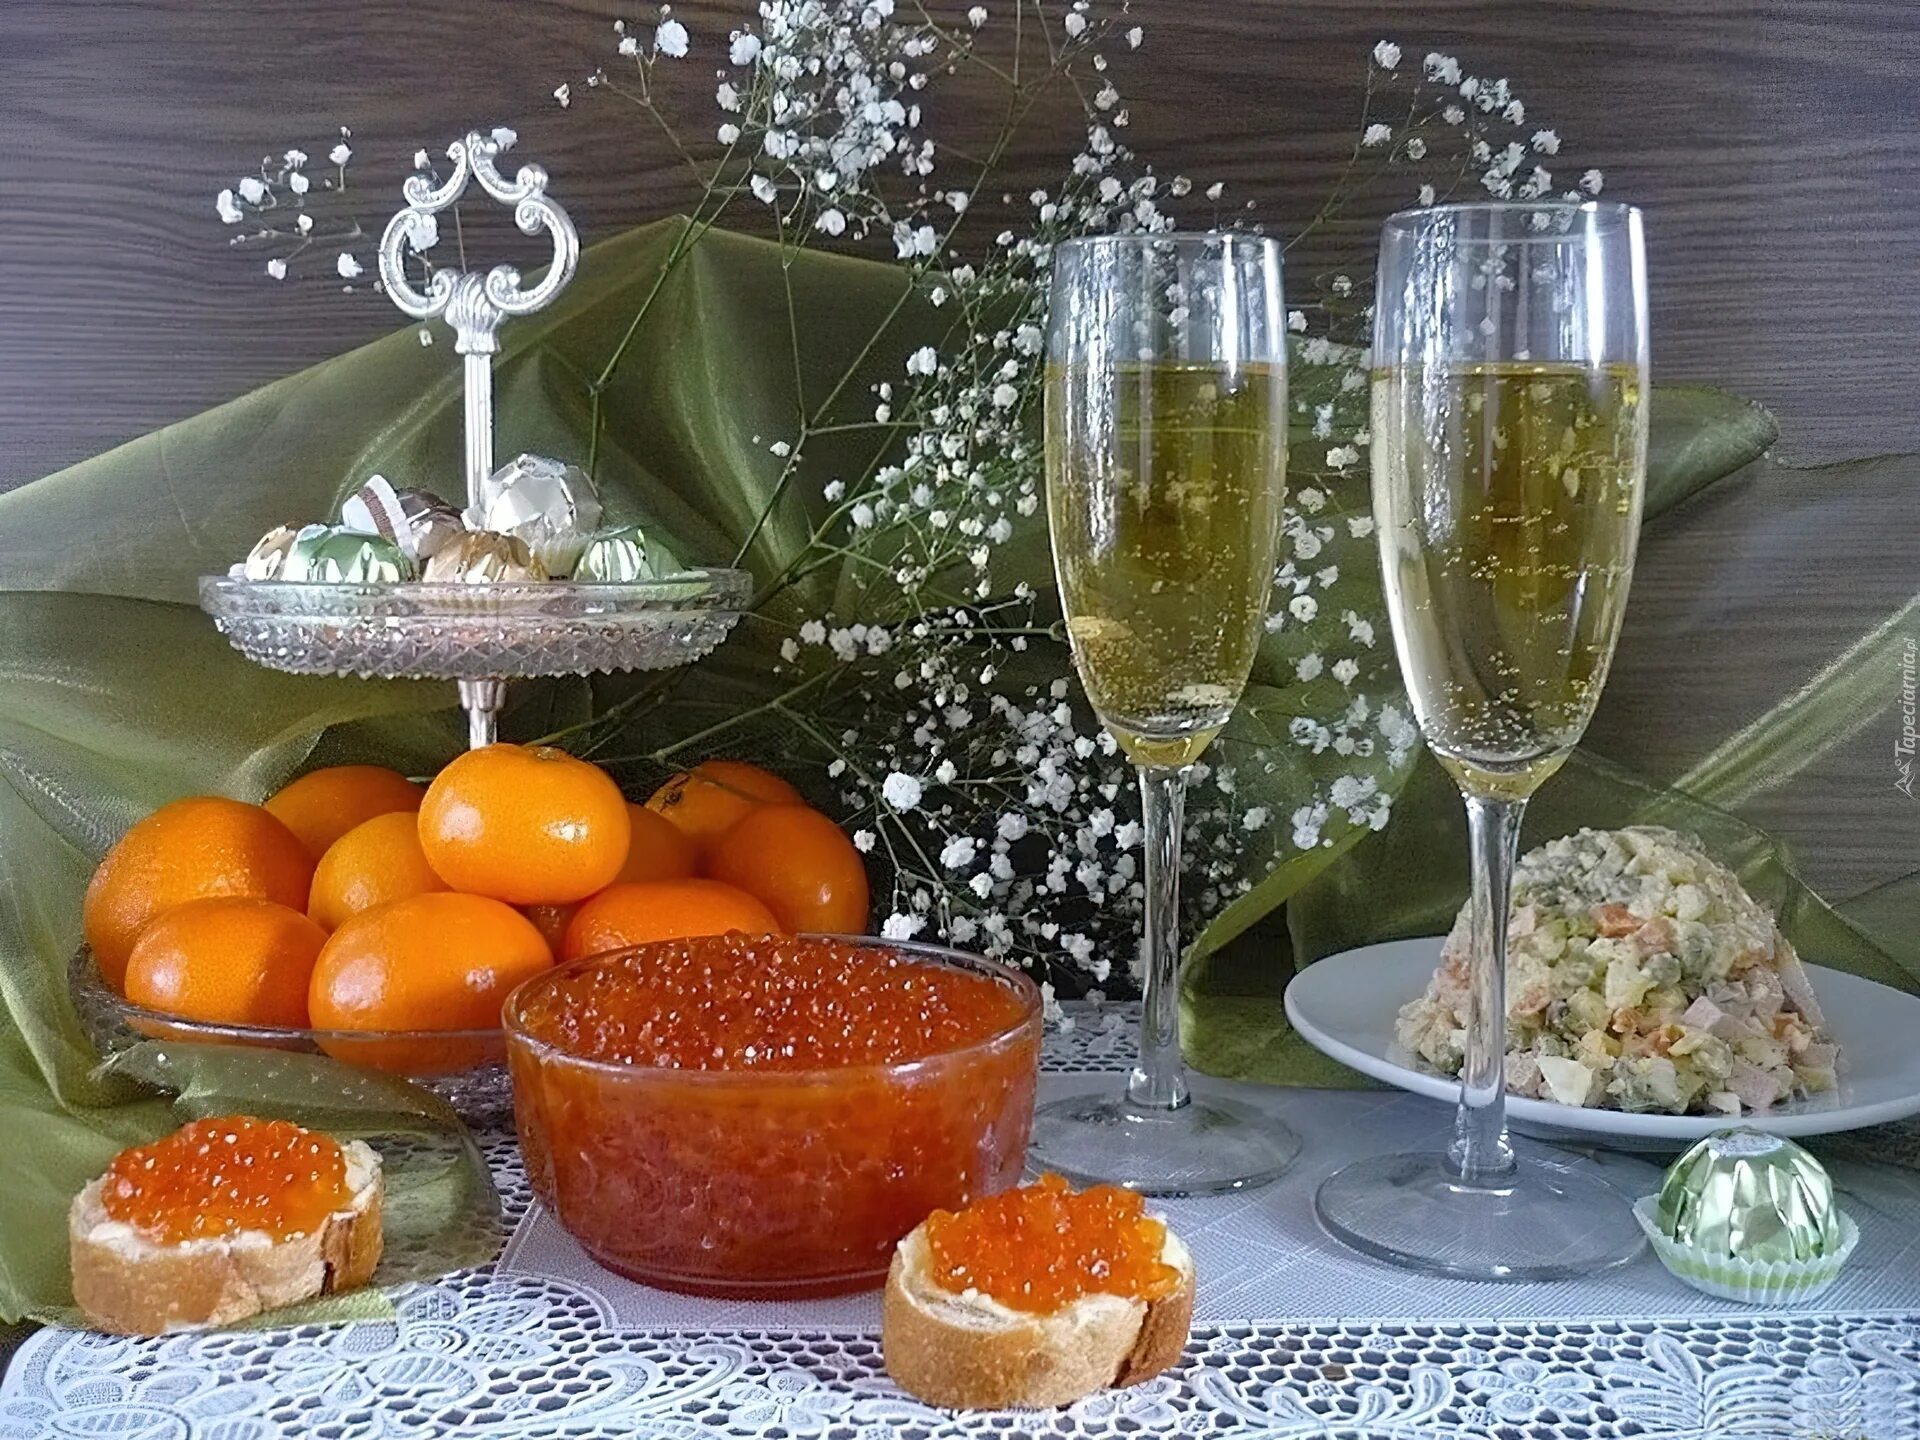 Икра на новогоднем столе. Новогодний и праздничный стол. Стол с мандаринами и шампанским. Бутерброды с икрой и шампанское. Бокал шампанского и апельсины